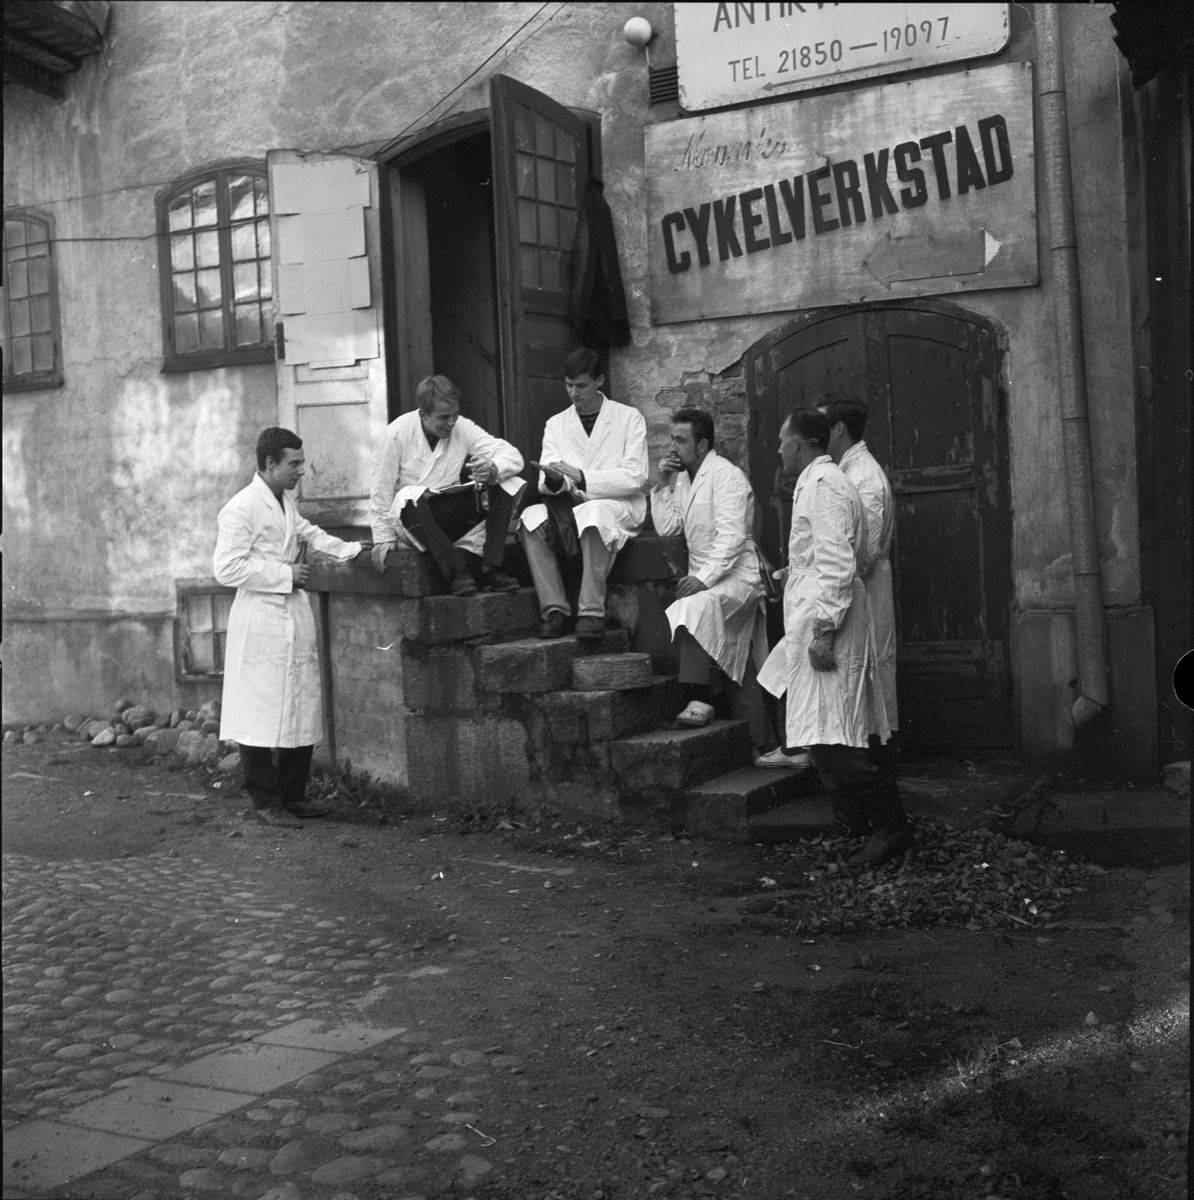 Studentteatern - "karamellfabrik blir teater", Uppsala 1965